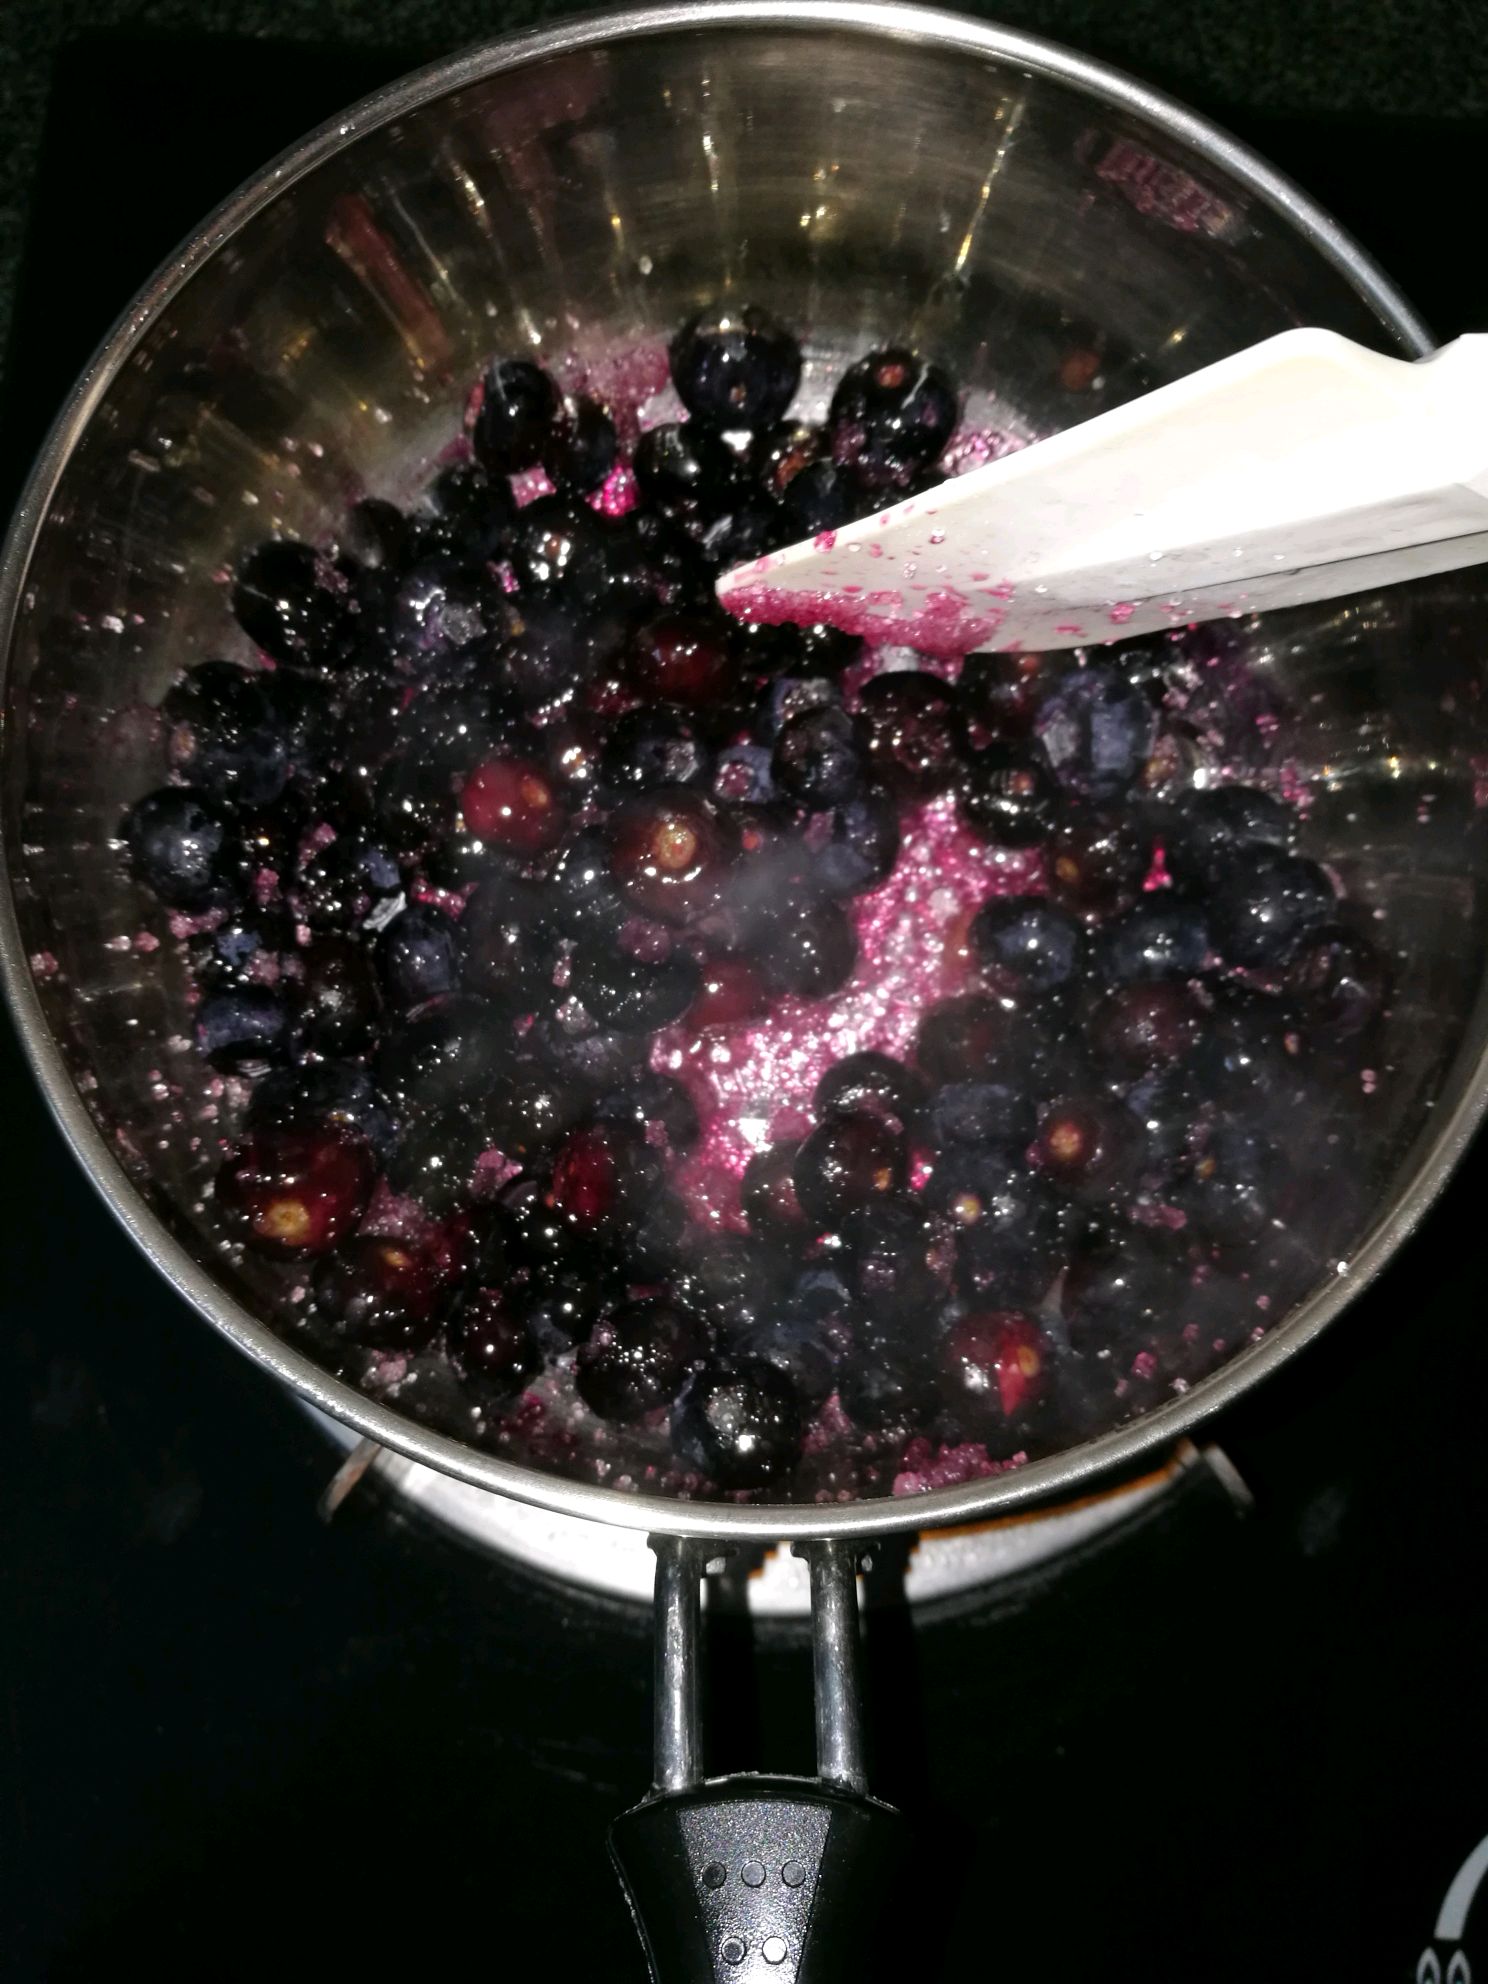 蓝莓酱的做法_【图解】蓝莓酱怎么做如何做好吃_蓝莓酱家常做法大全_danaeliu_豆果美食